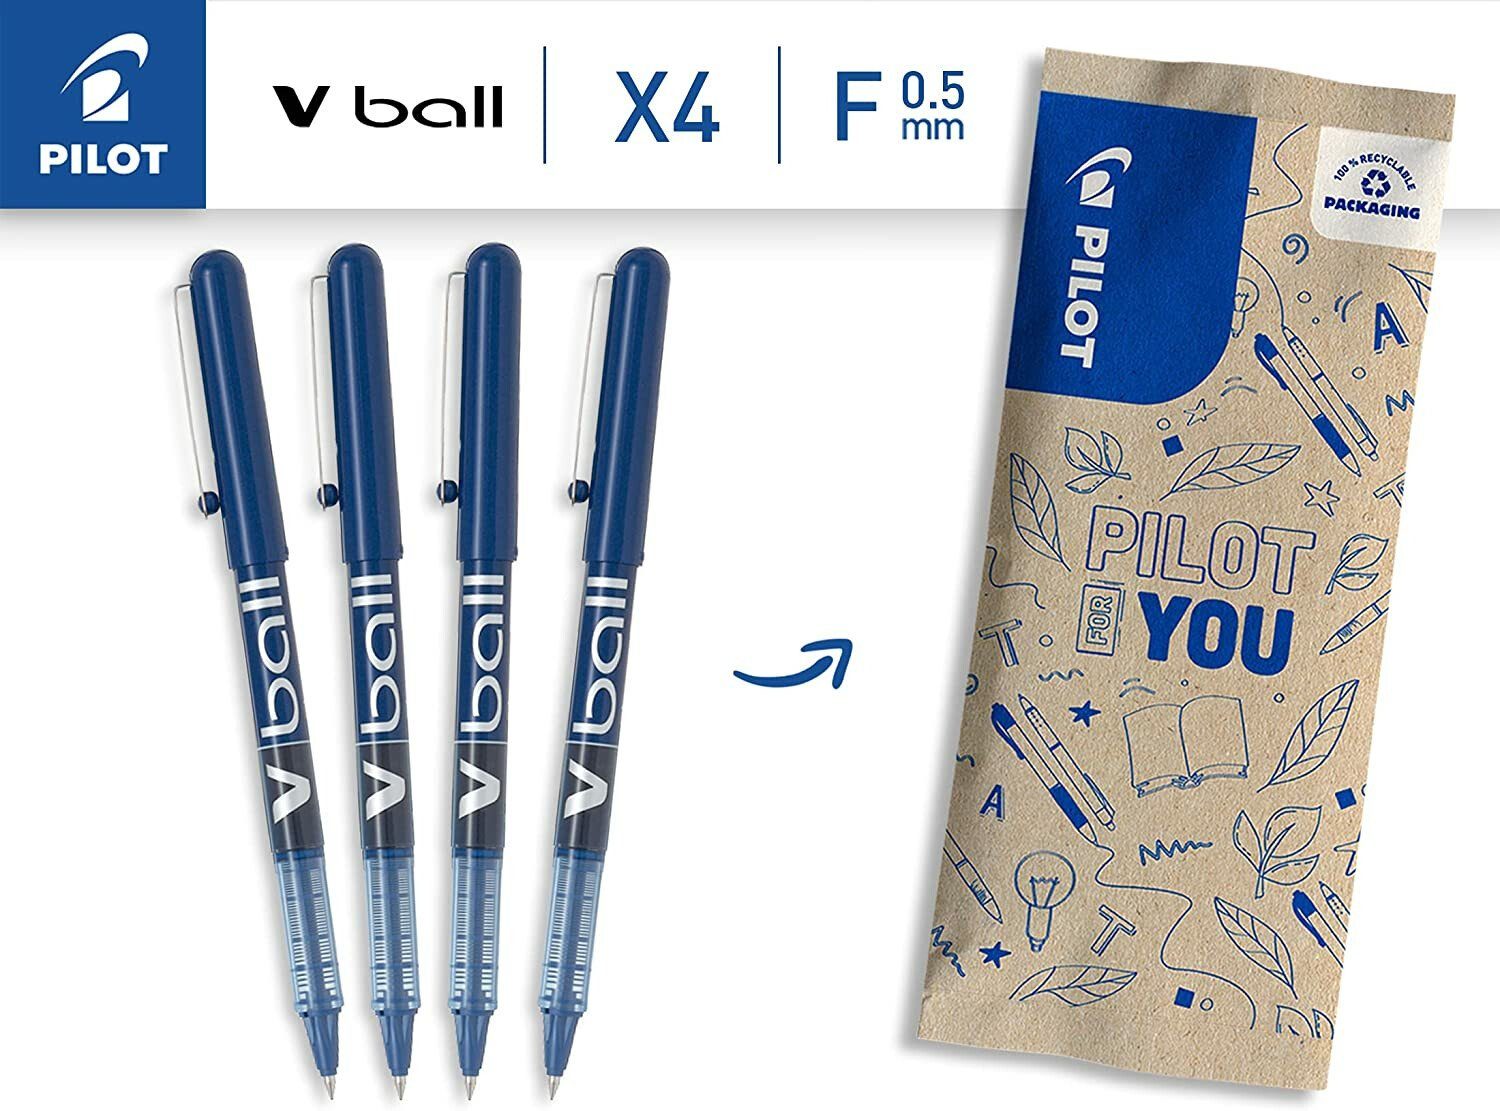 PILOT Gelschreiber Pilot V-Ball Pack 4 - Medium Pen Blue of Rollerball - - 